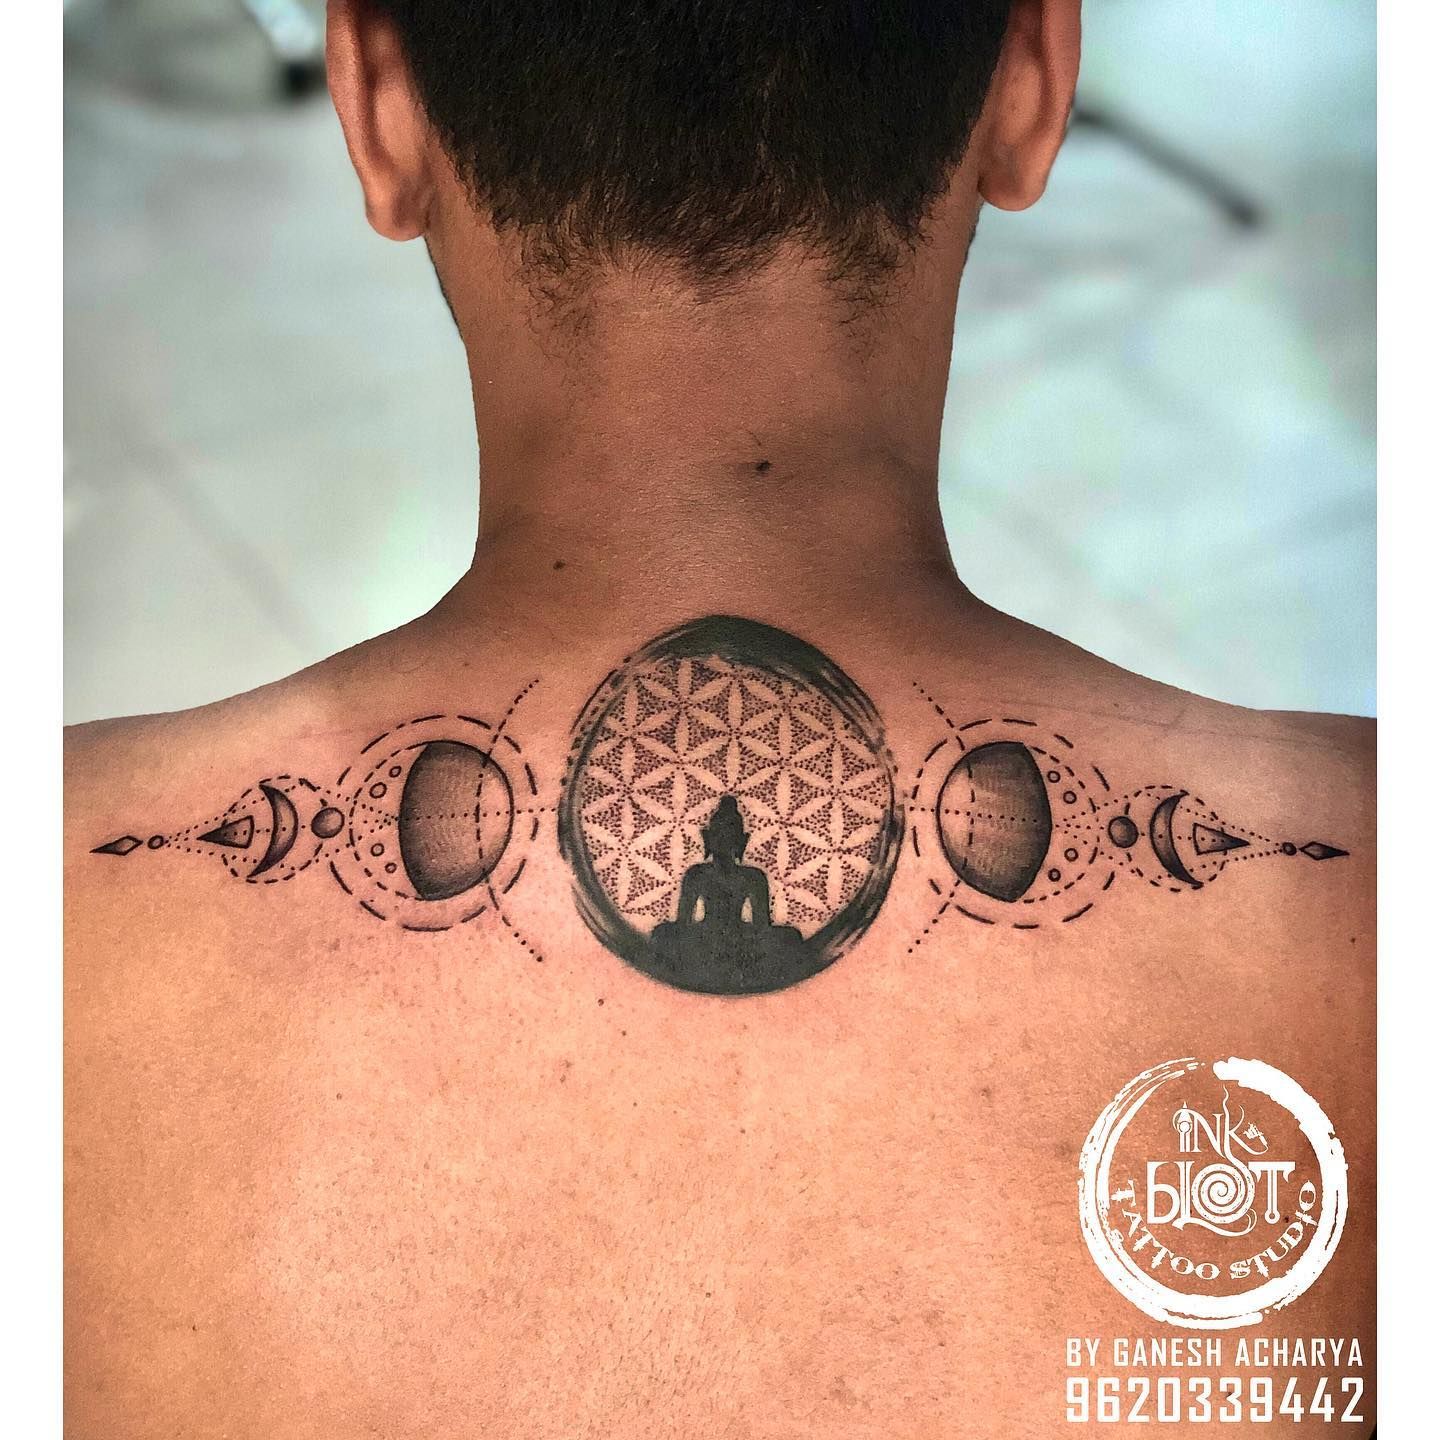 Buddha armband tattoo | Angel tattoo designs, Arm band tattoo, Tattoos